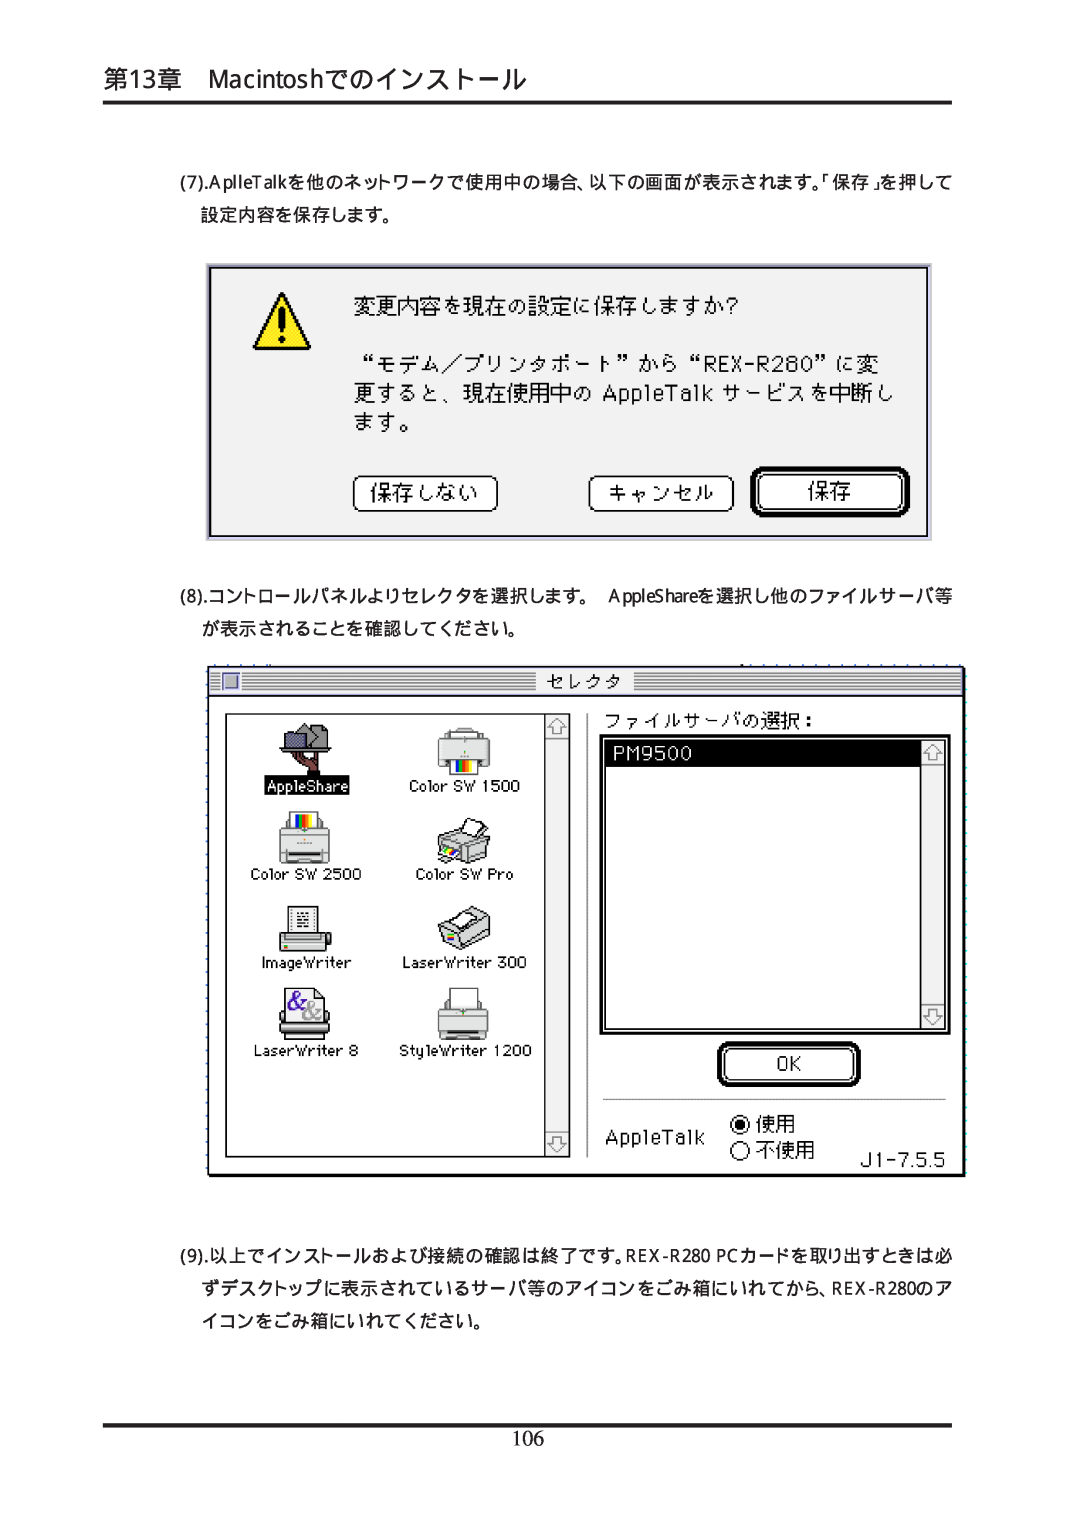 Ratoc Systems REX-R280 manual 第13章 Macintoshでのインストール, AplleTalkを他のネットワークで使用中の場合、以下の画面が表示されます。「保存」を押して 設定内容を保存します。 